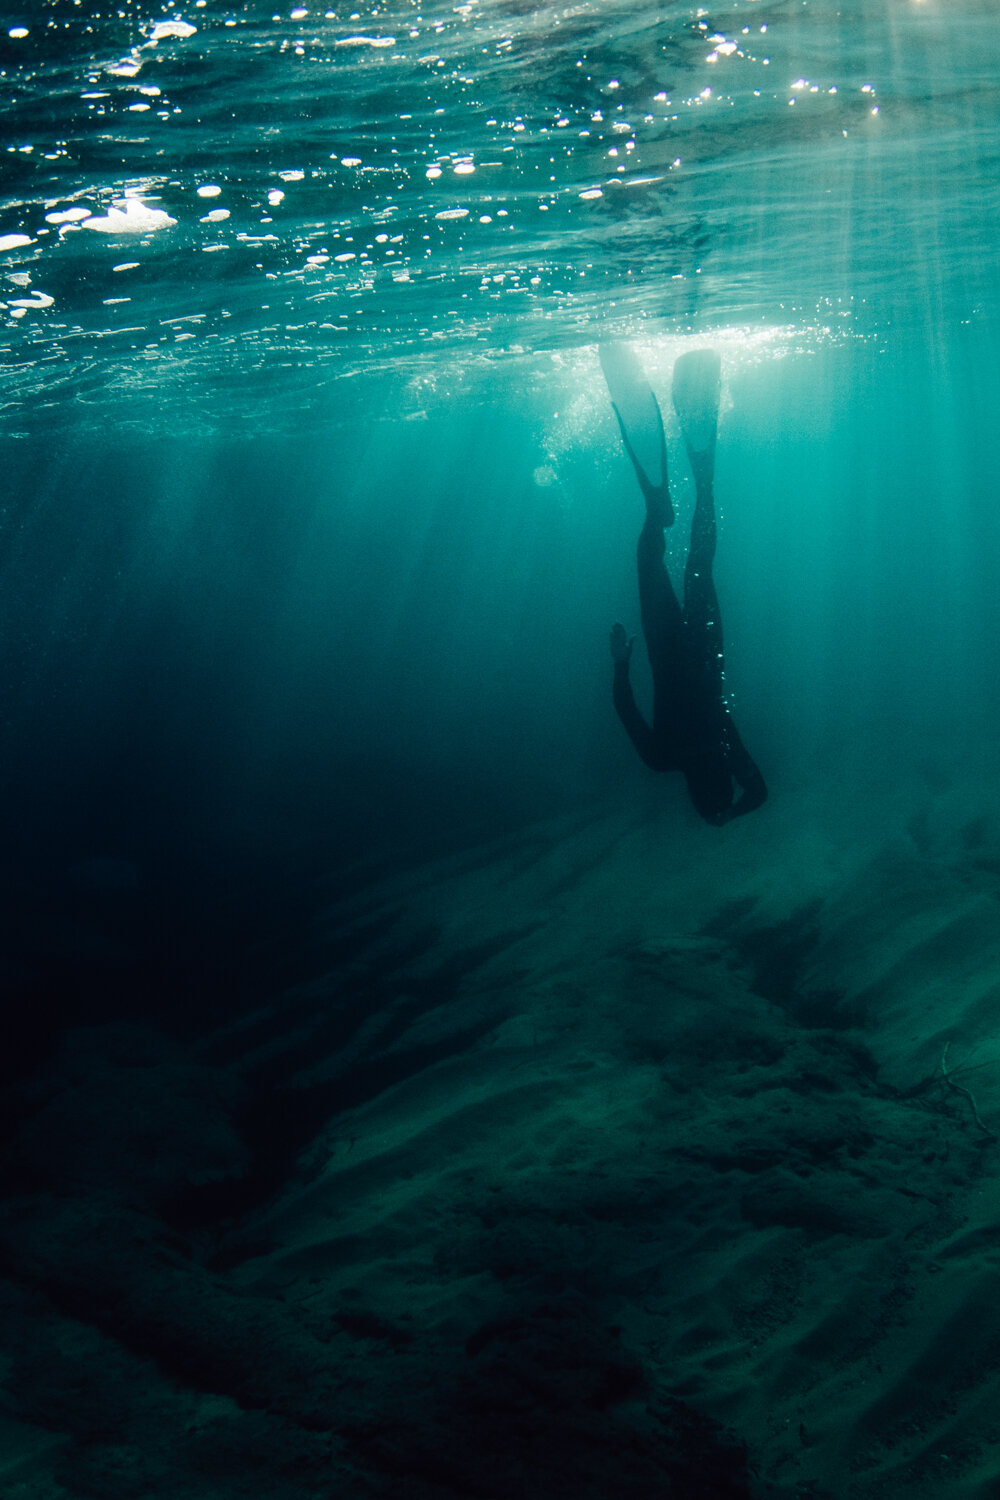 Krista Espino corse corsica photograph photographe photographer europe underwater freedive dive diving explore adventure ajaccio corse-du-sud sea mediterranean island france french_-17.jpg